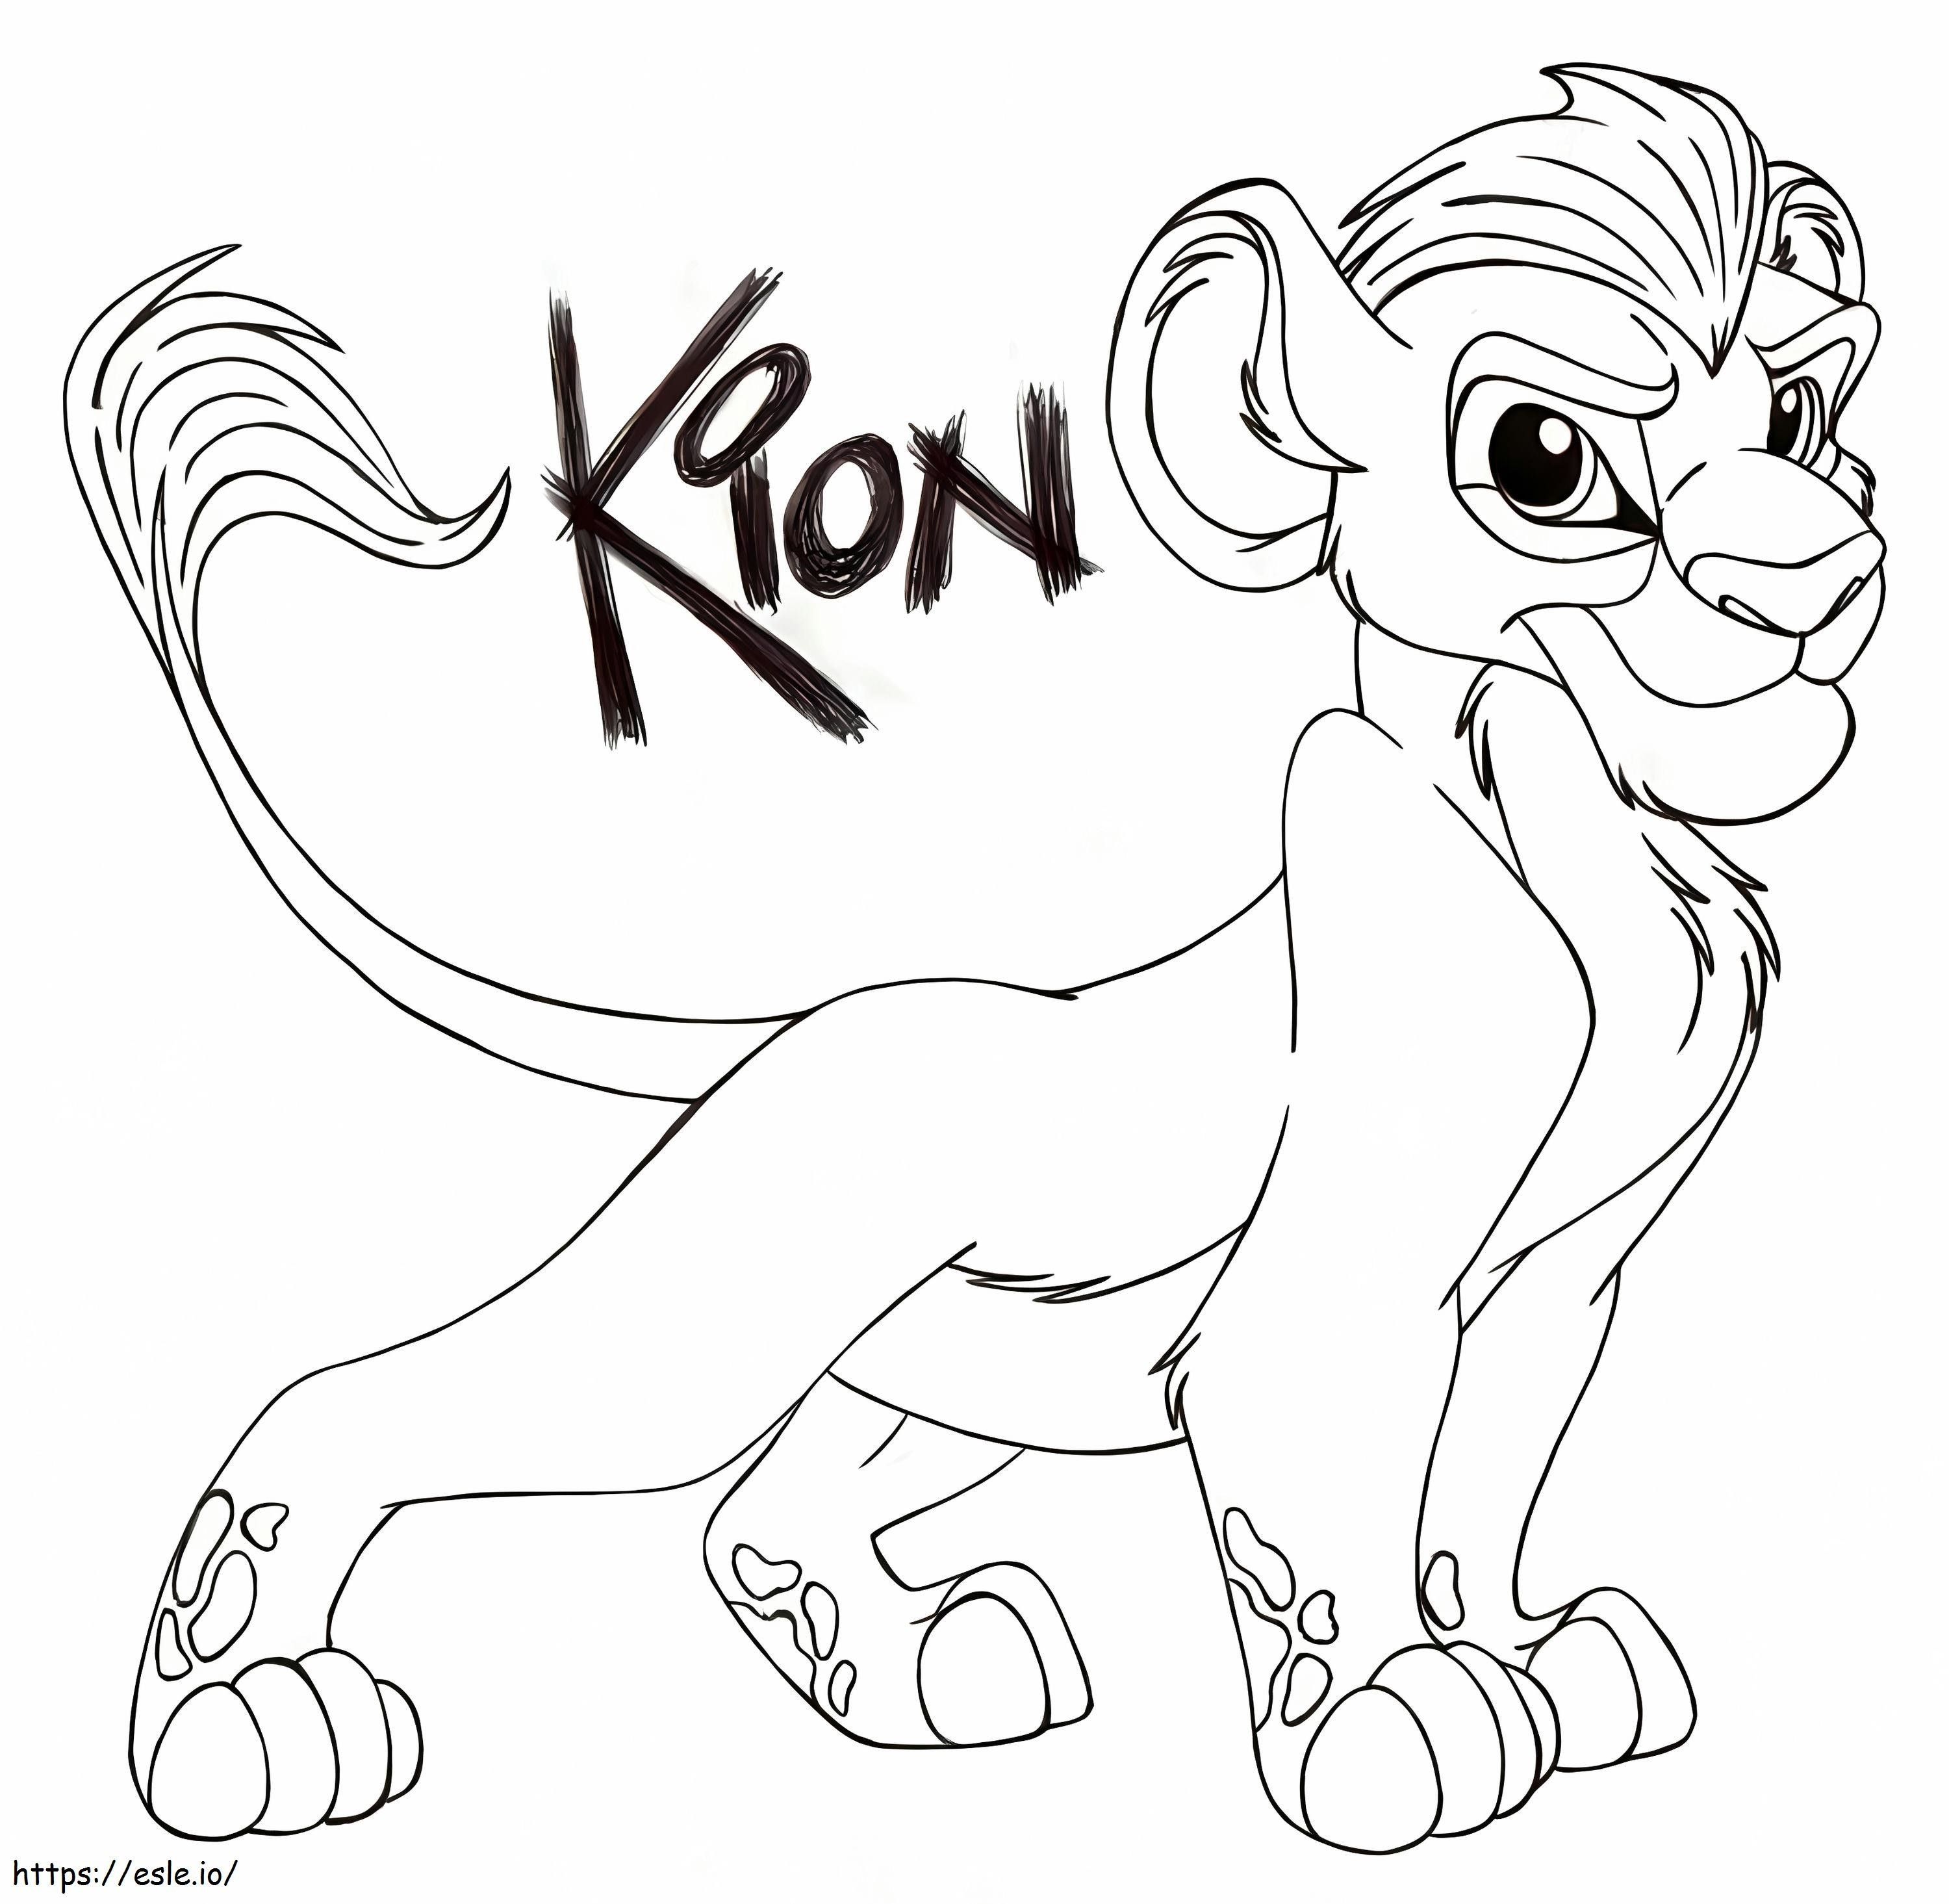 Kion da Guarda do Leão para colorir